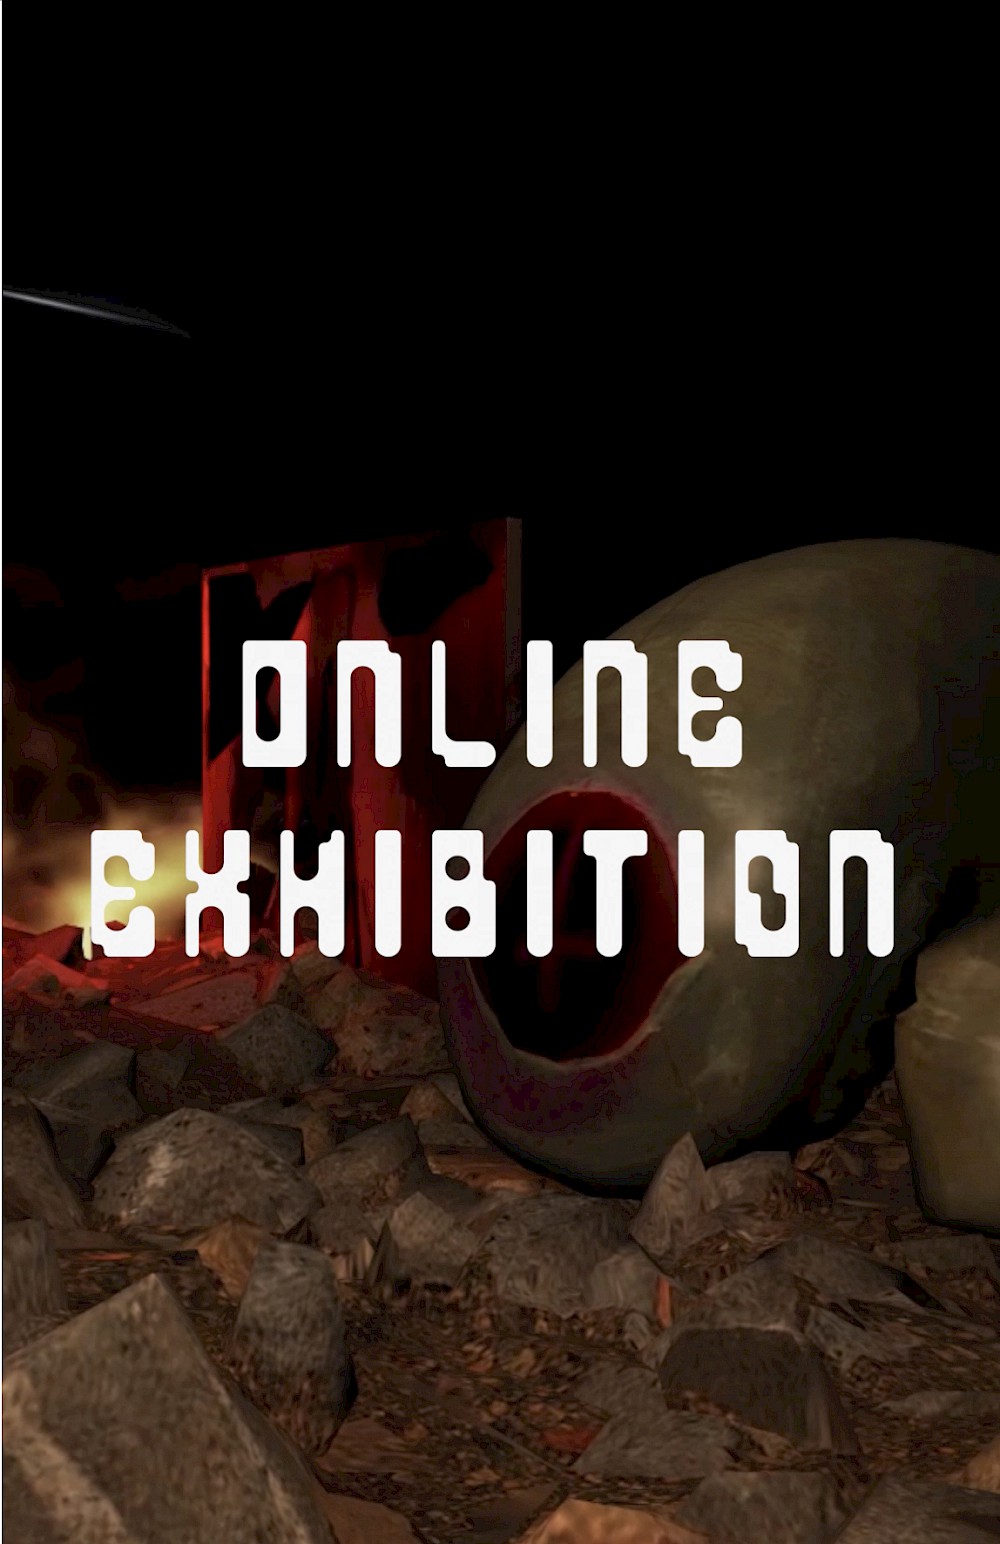 Nachbericht zur Online-Ausstellung